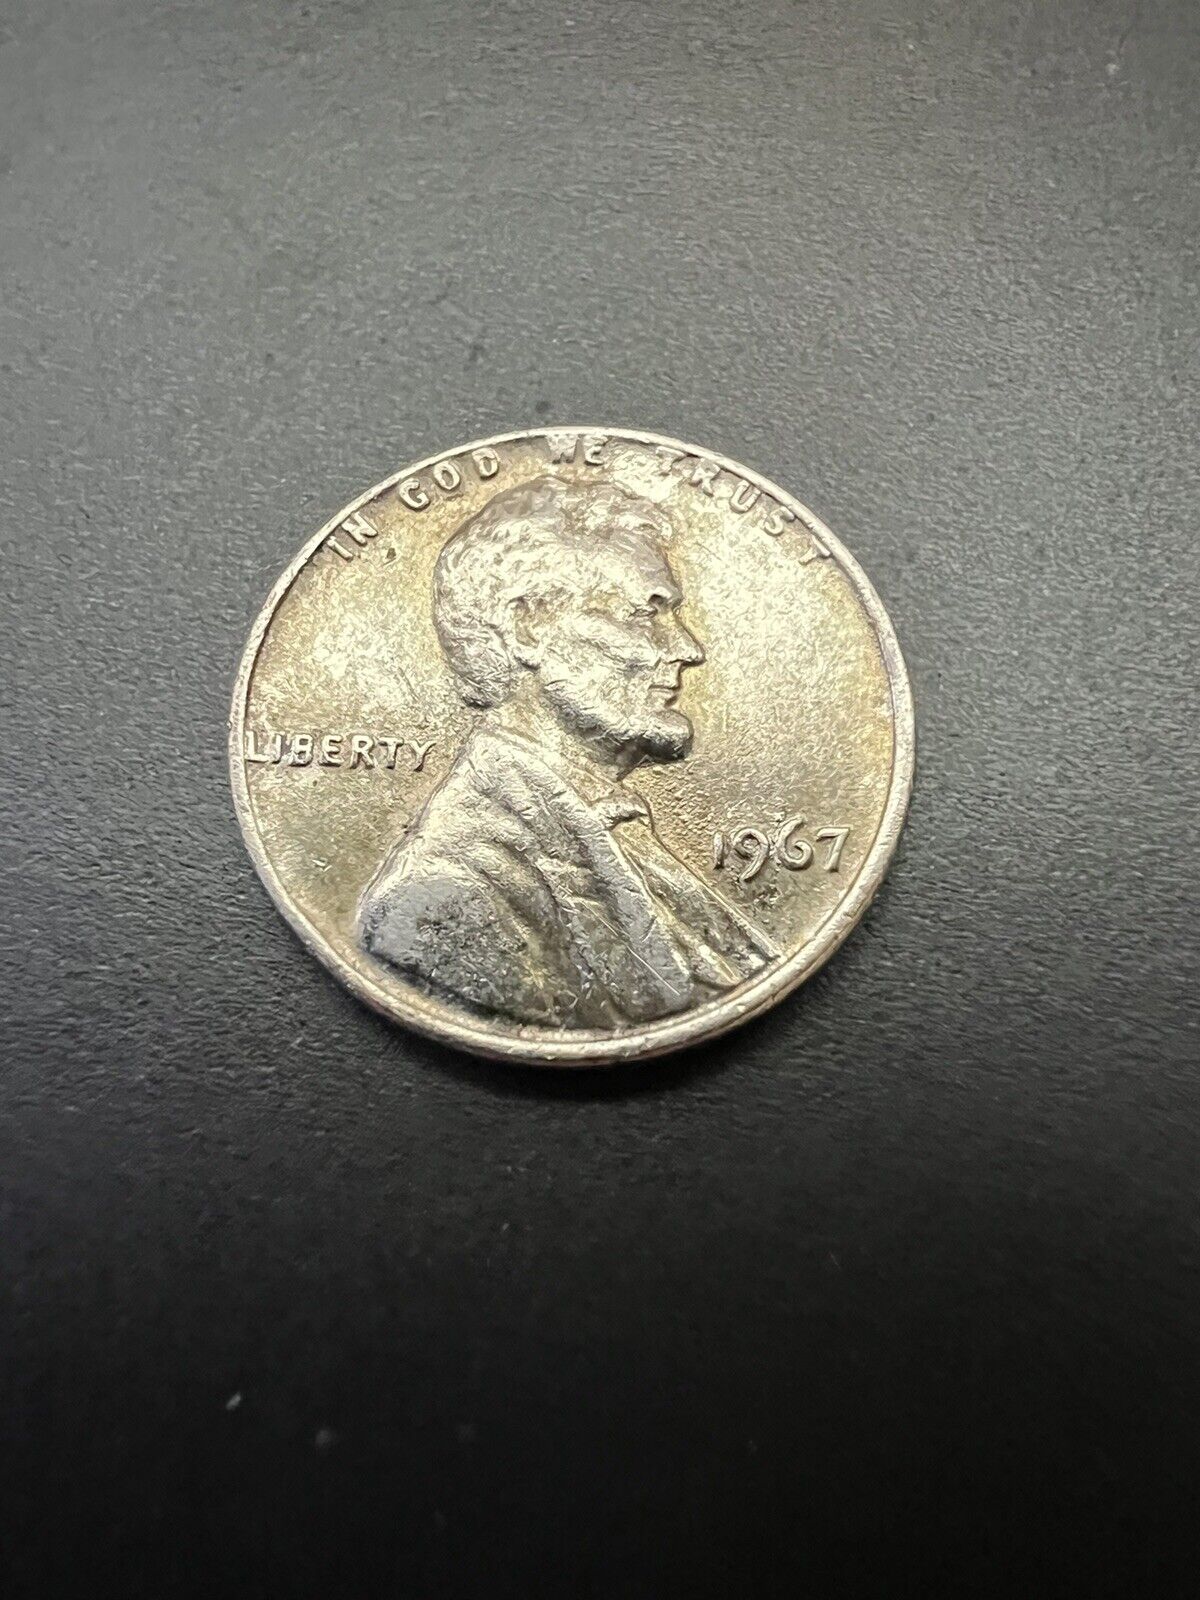 1967 Lincoln Penny No Mint Mark - RARE Error \